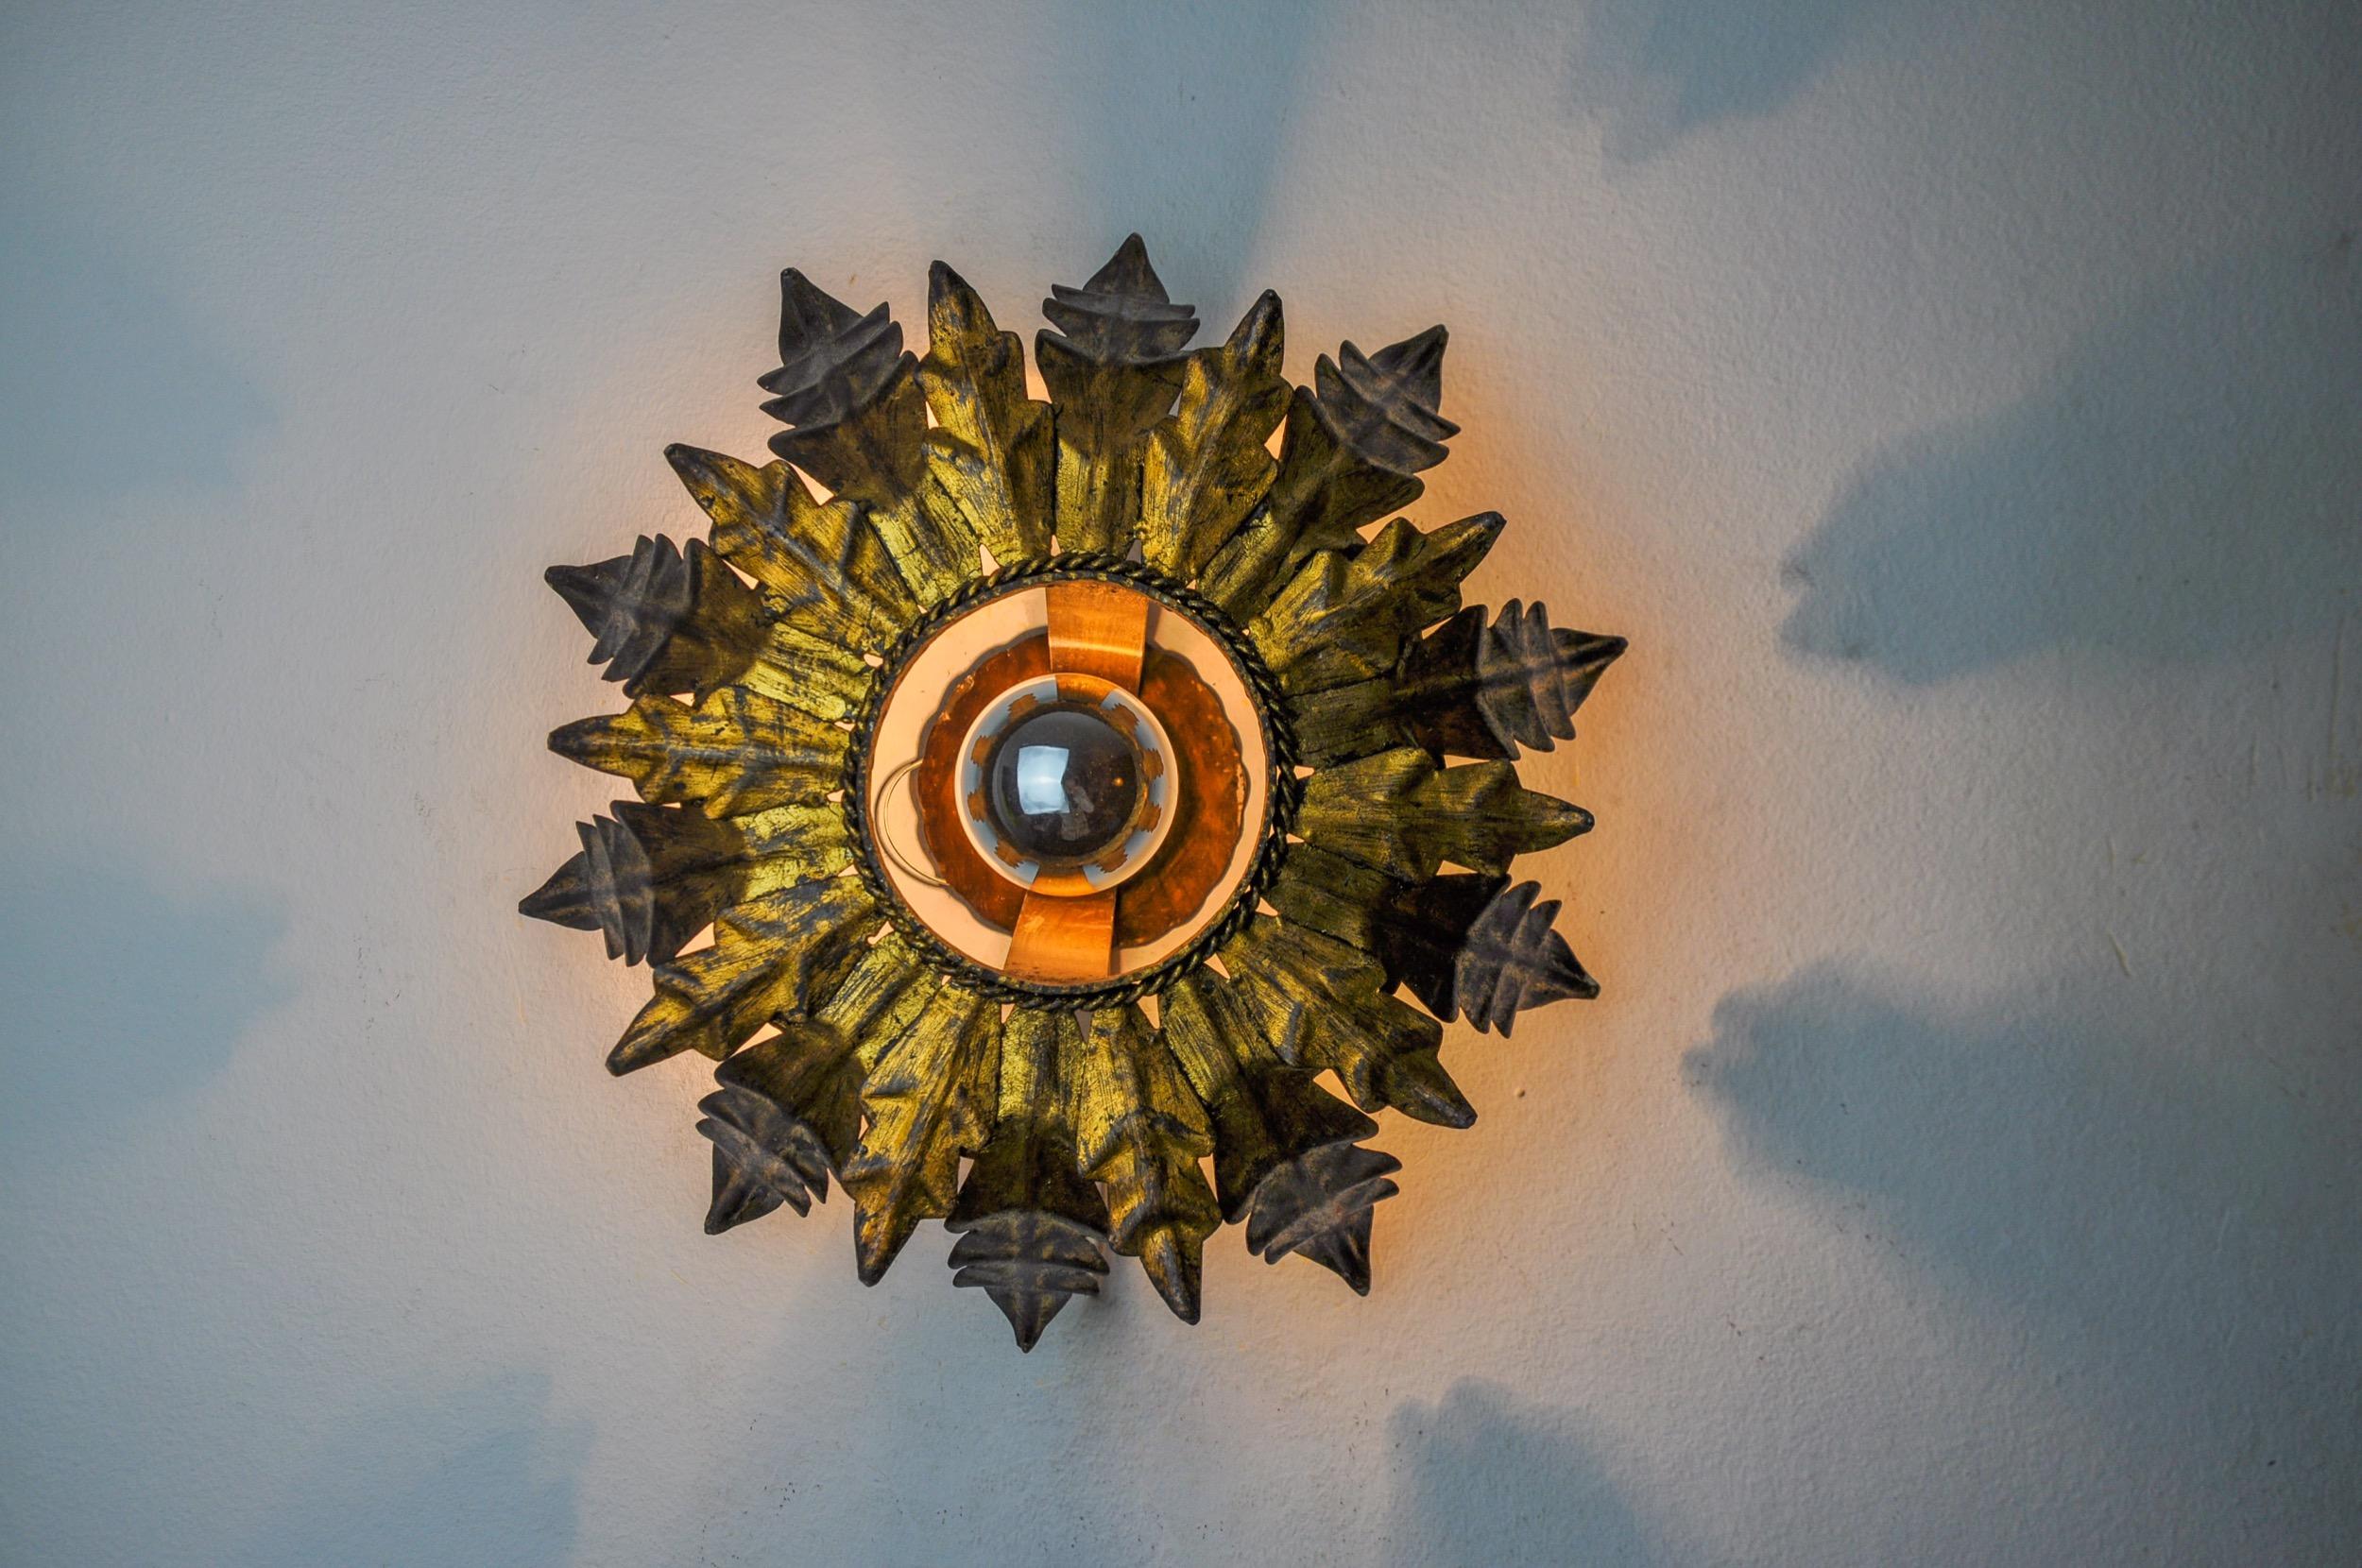 Très belle et rare lampe solaire, conçue et produite par ferro arte en Espagne dans les années 1960. Structure en métal doré à la feuille d'or. Des objets uniques qui s'illuminent à merveille et apportent une véritable touche design à votre